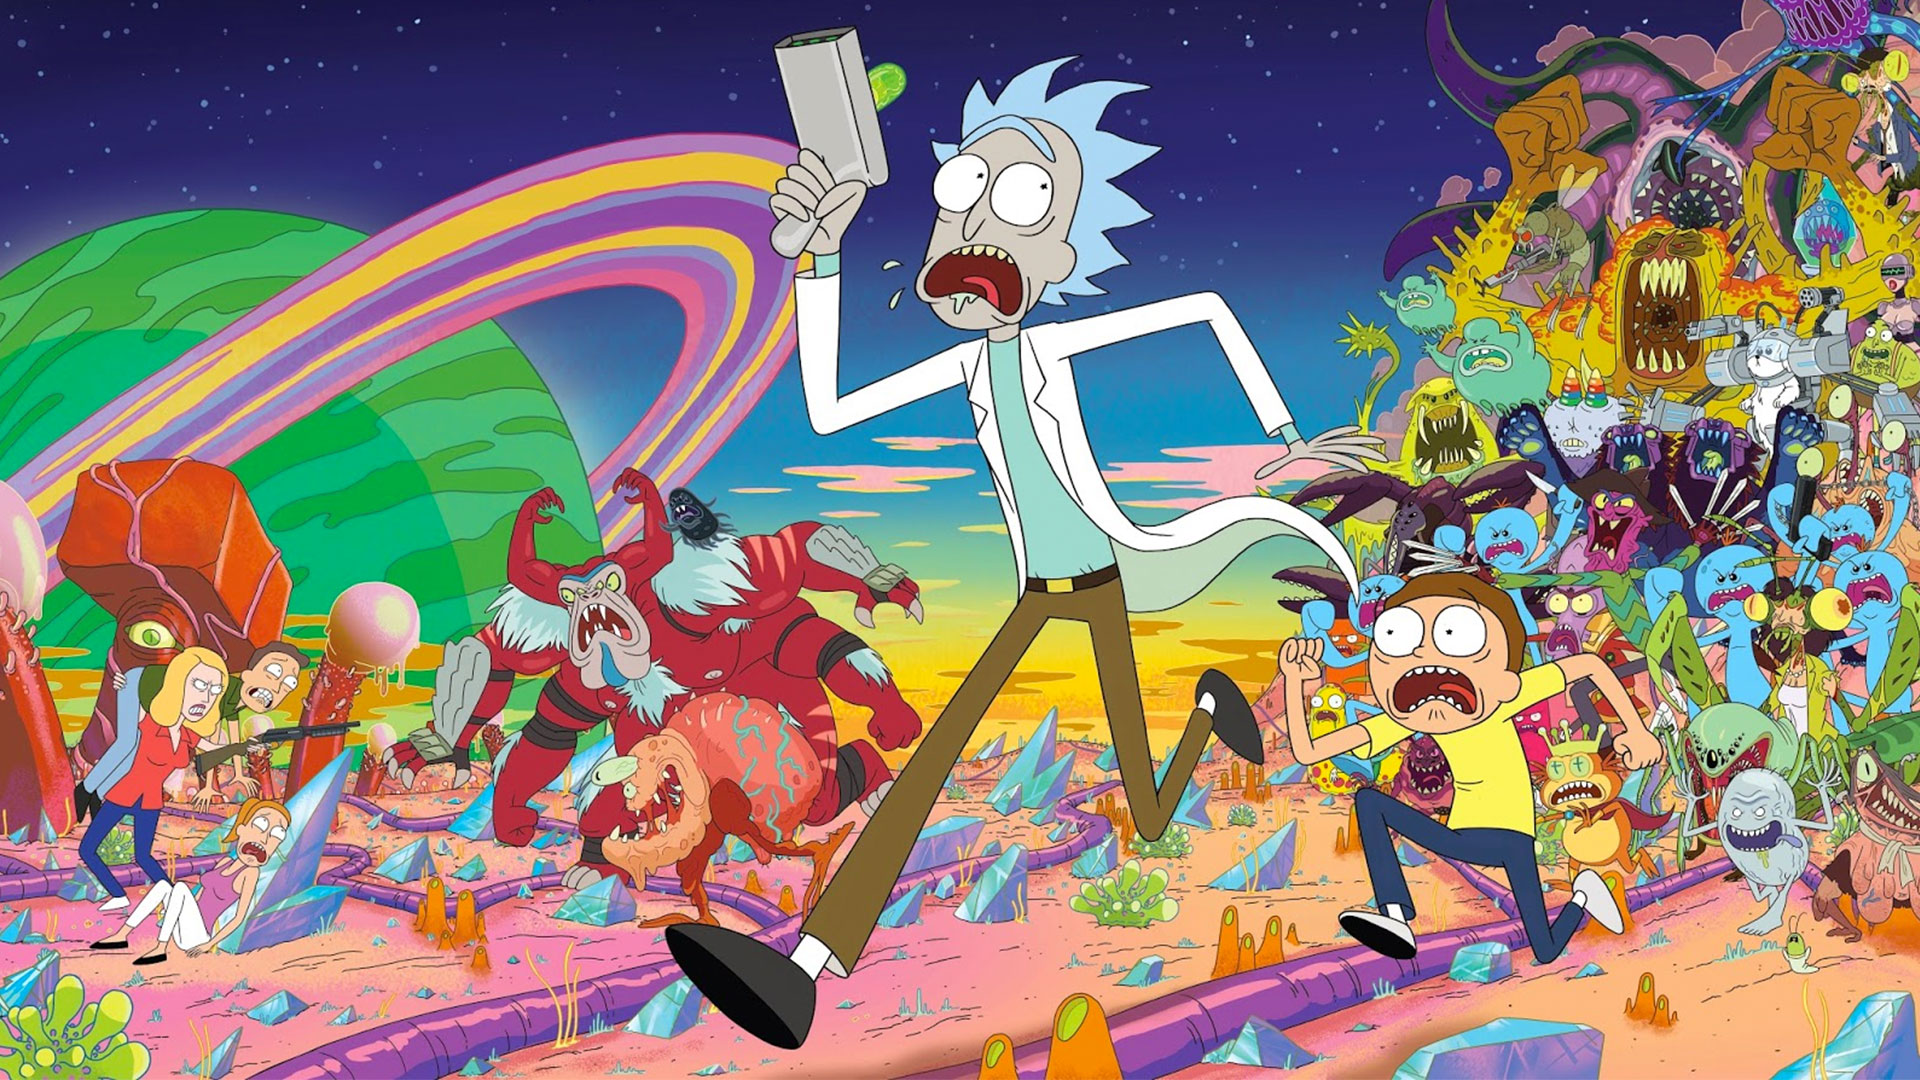 Les derniers épisodes de la saison 4 de Rick and Morty sont arrivés (accompagnés) sur Netflix